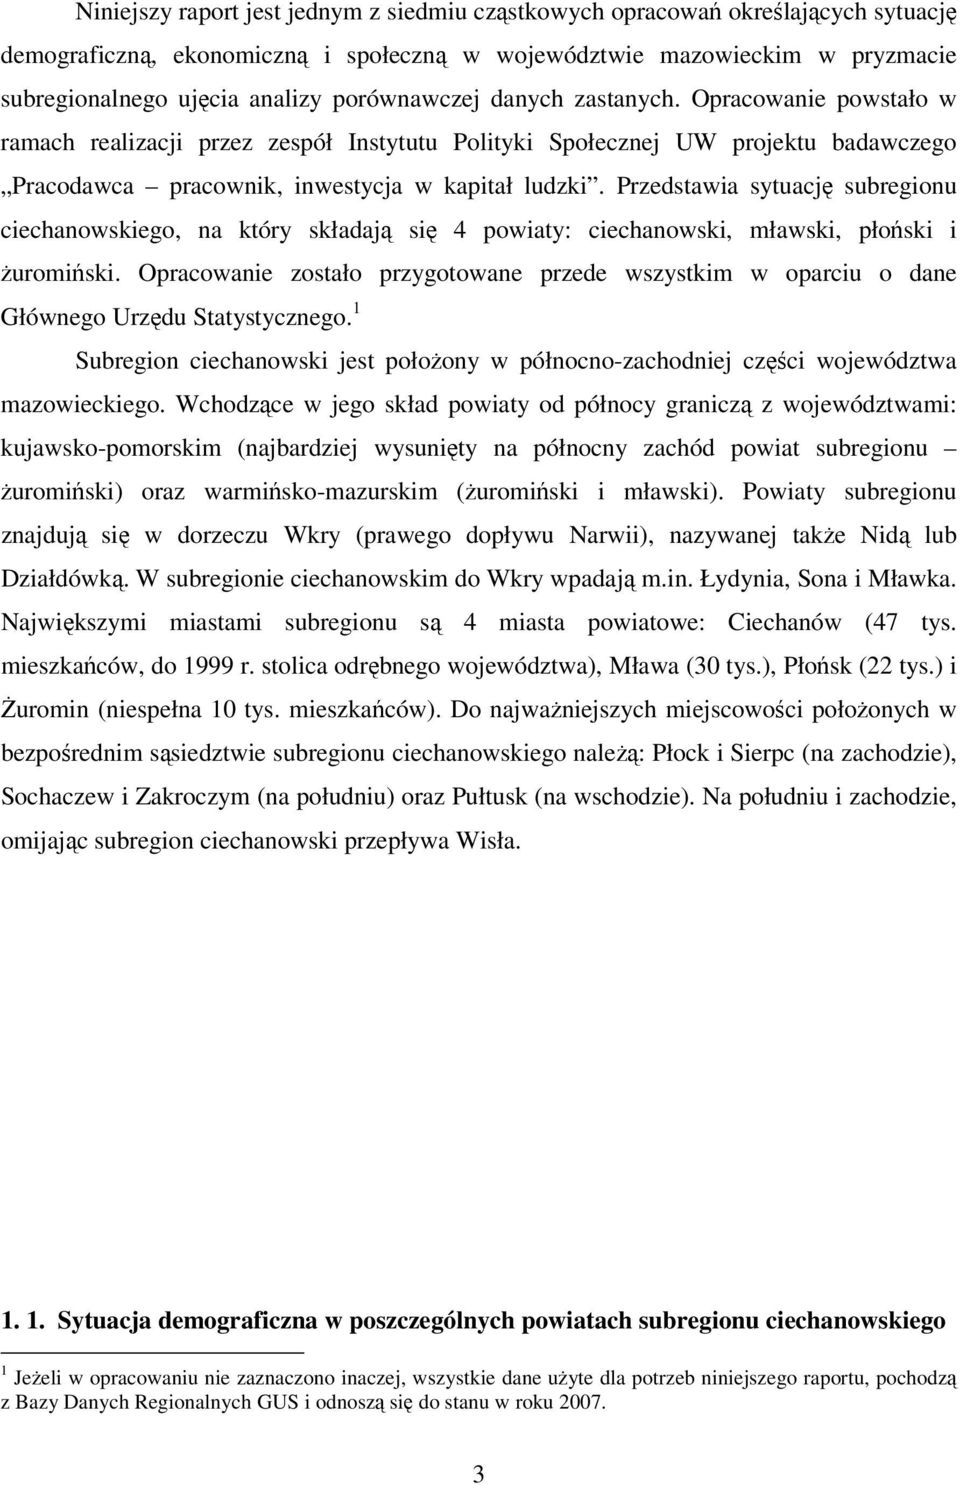 Przedstawia sytuację subregionu ciechanowskiego, na który składają się 4 powiaty: ciechanowski, mławski, płoński i żuromiński.